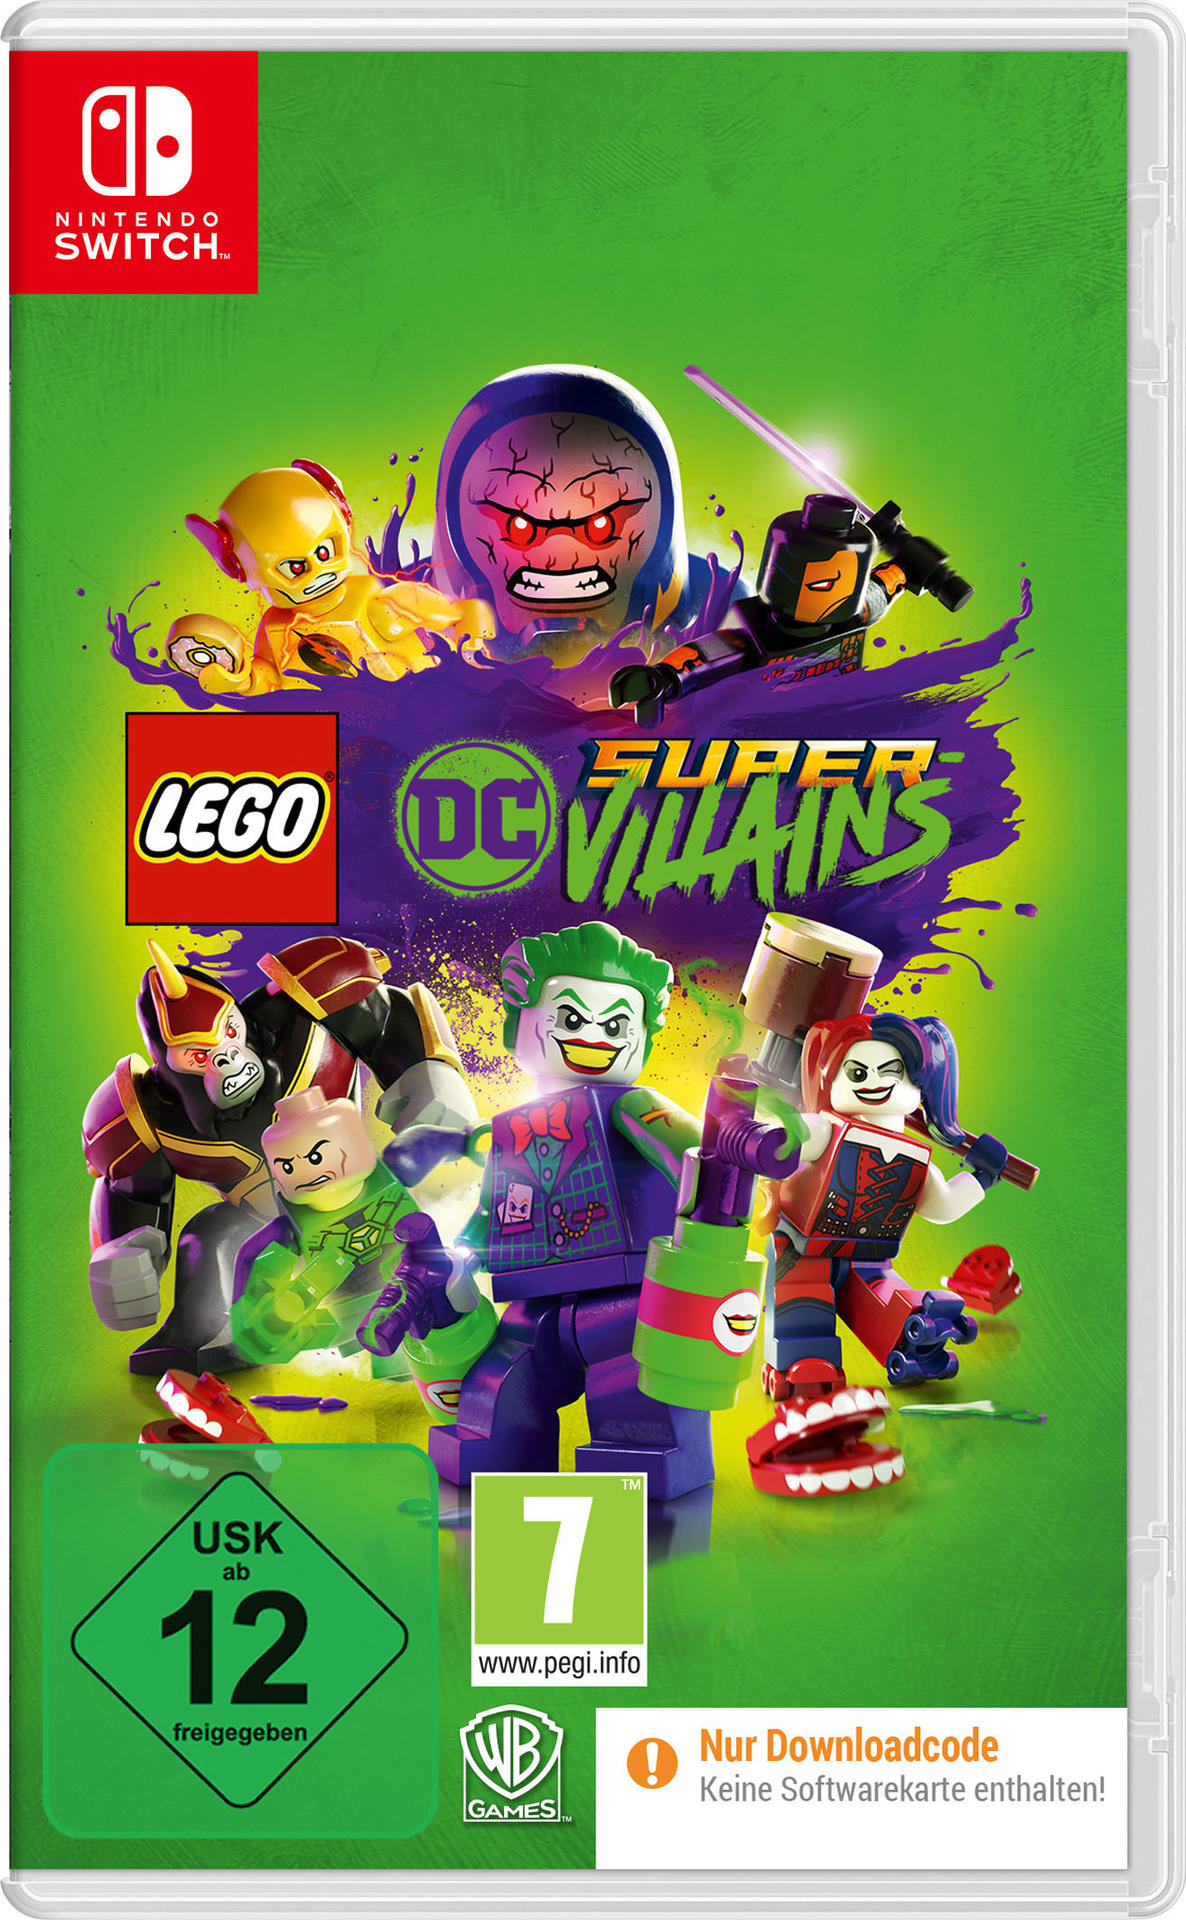 (Code DC der in LEGO Switch] Box) Super-Villains [Nintendo -